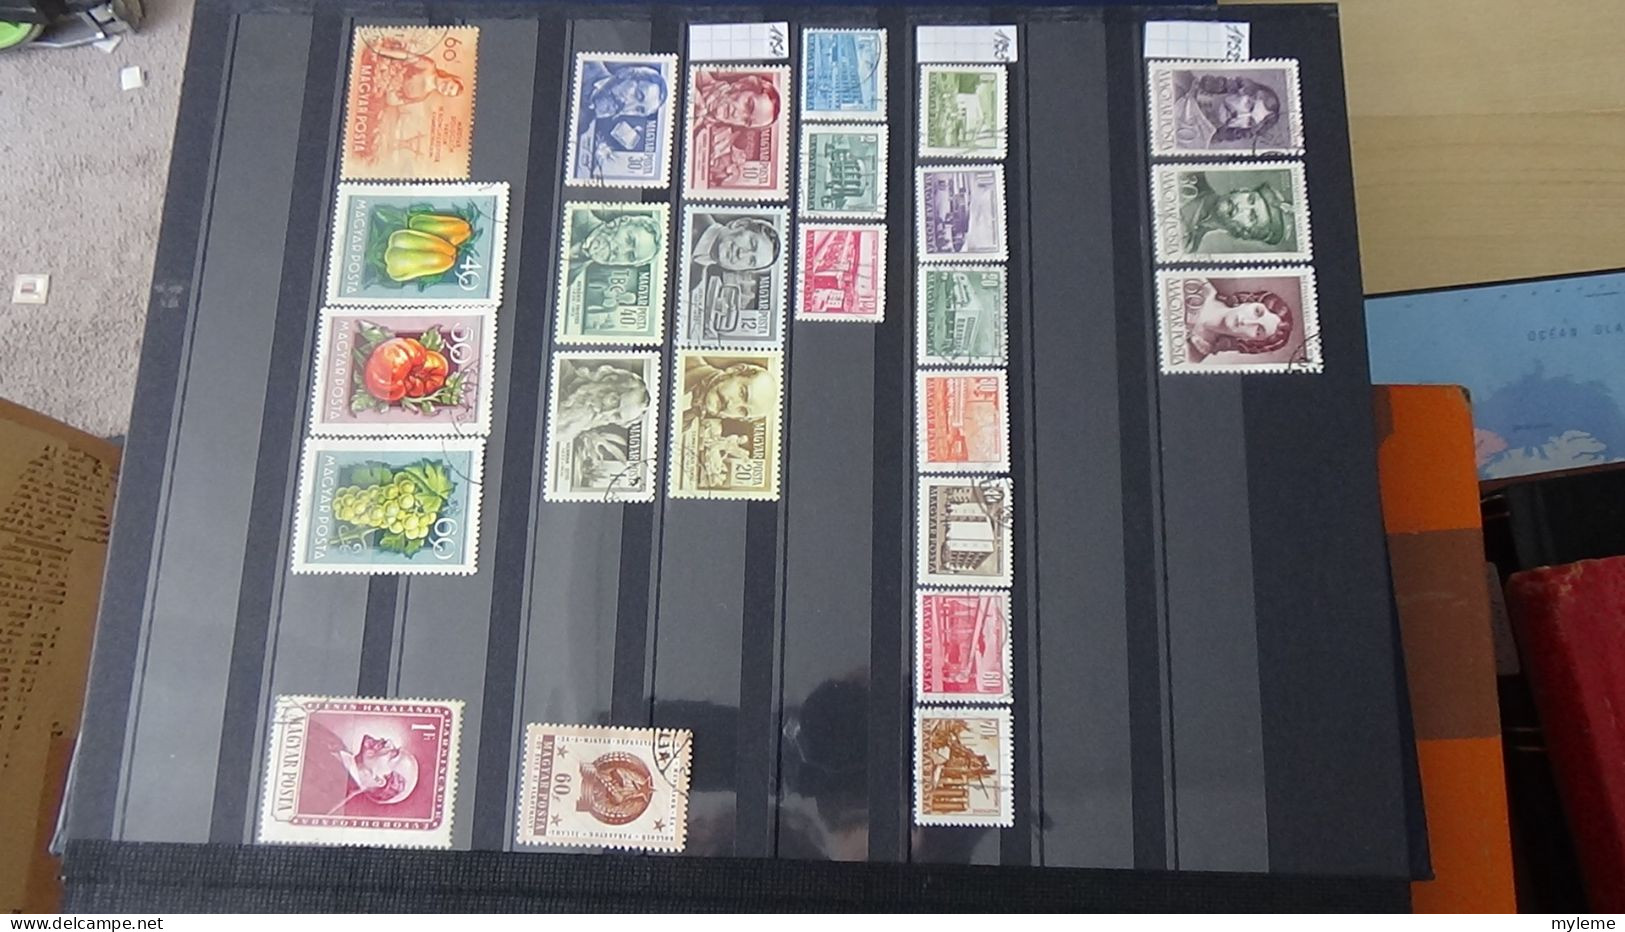 BF37 Ensemble de timbres de divers pays + France N° 206 + 207 **  Cote 430 euros